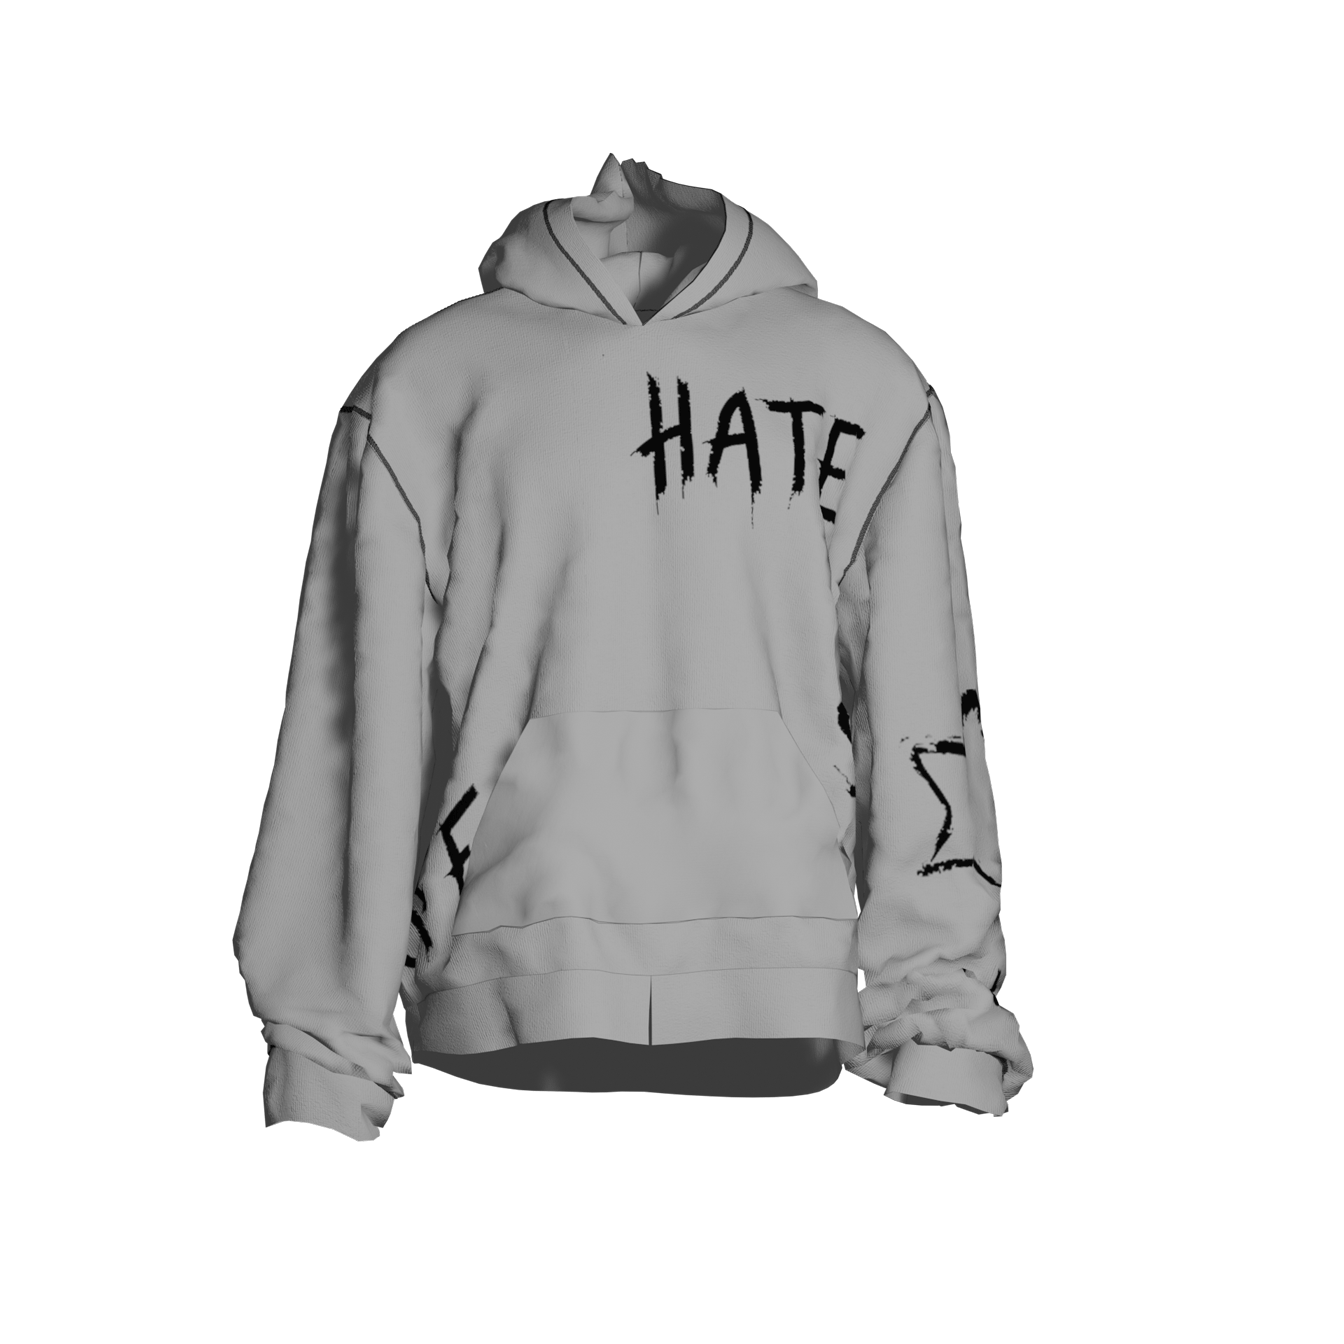 Hate//Like Hoodie white